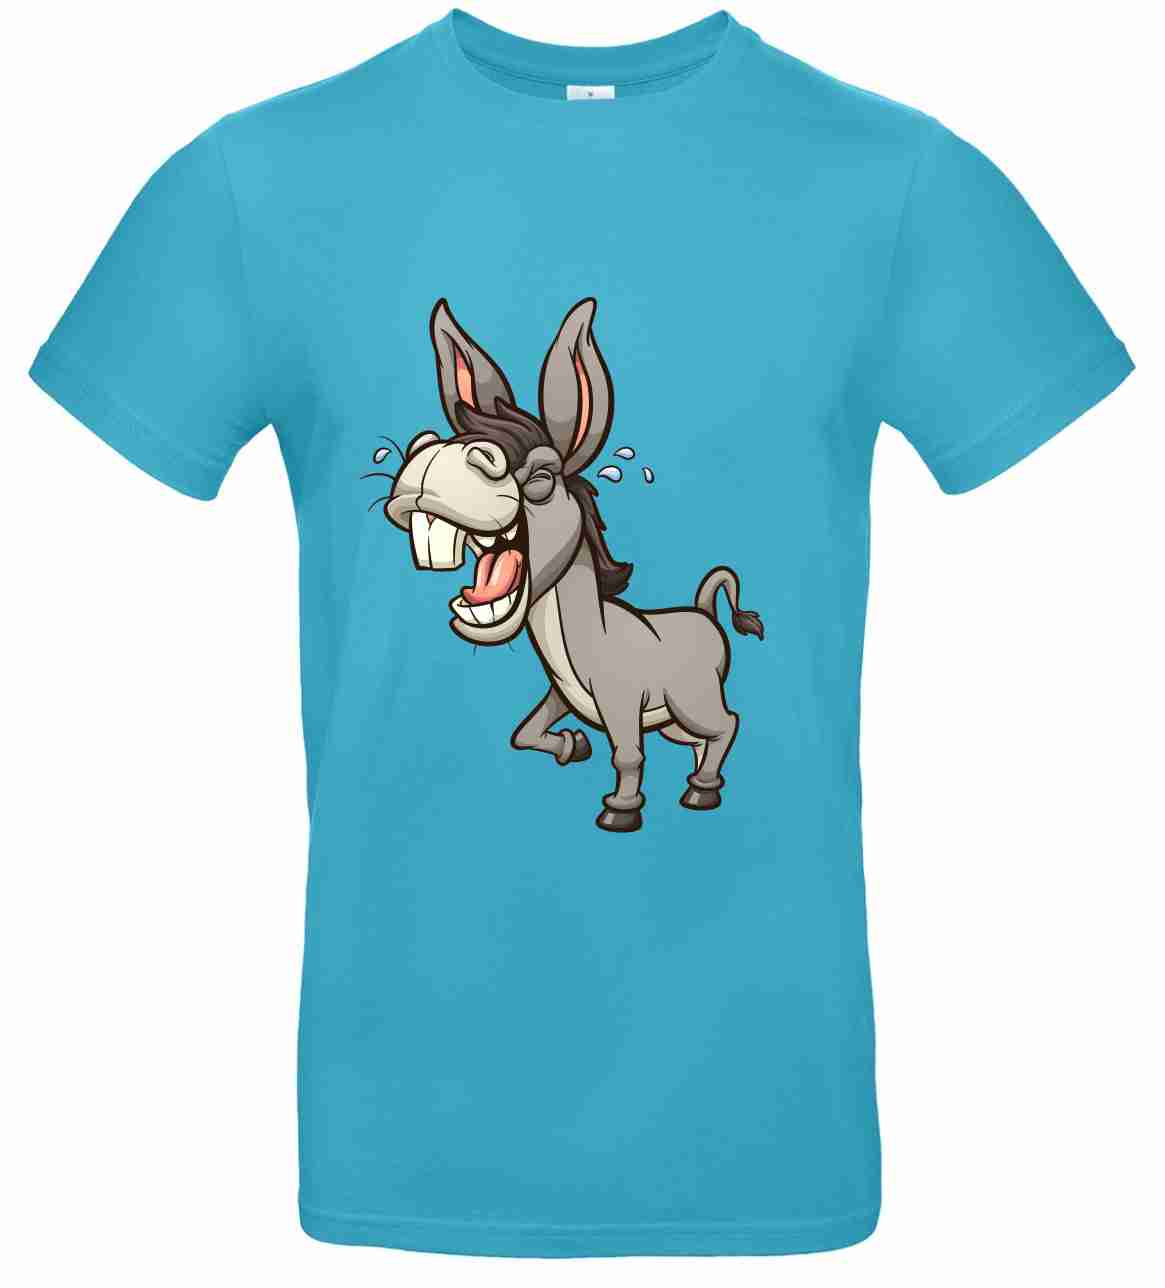 T-Shirt B&C Kids´ Exact 190 BCTK301 Mit Aufdruck "Lustiger Esel" auch zum selbst gestalten